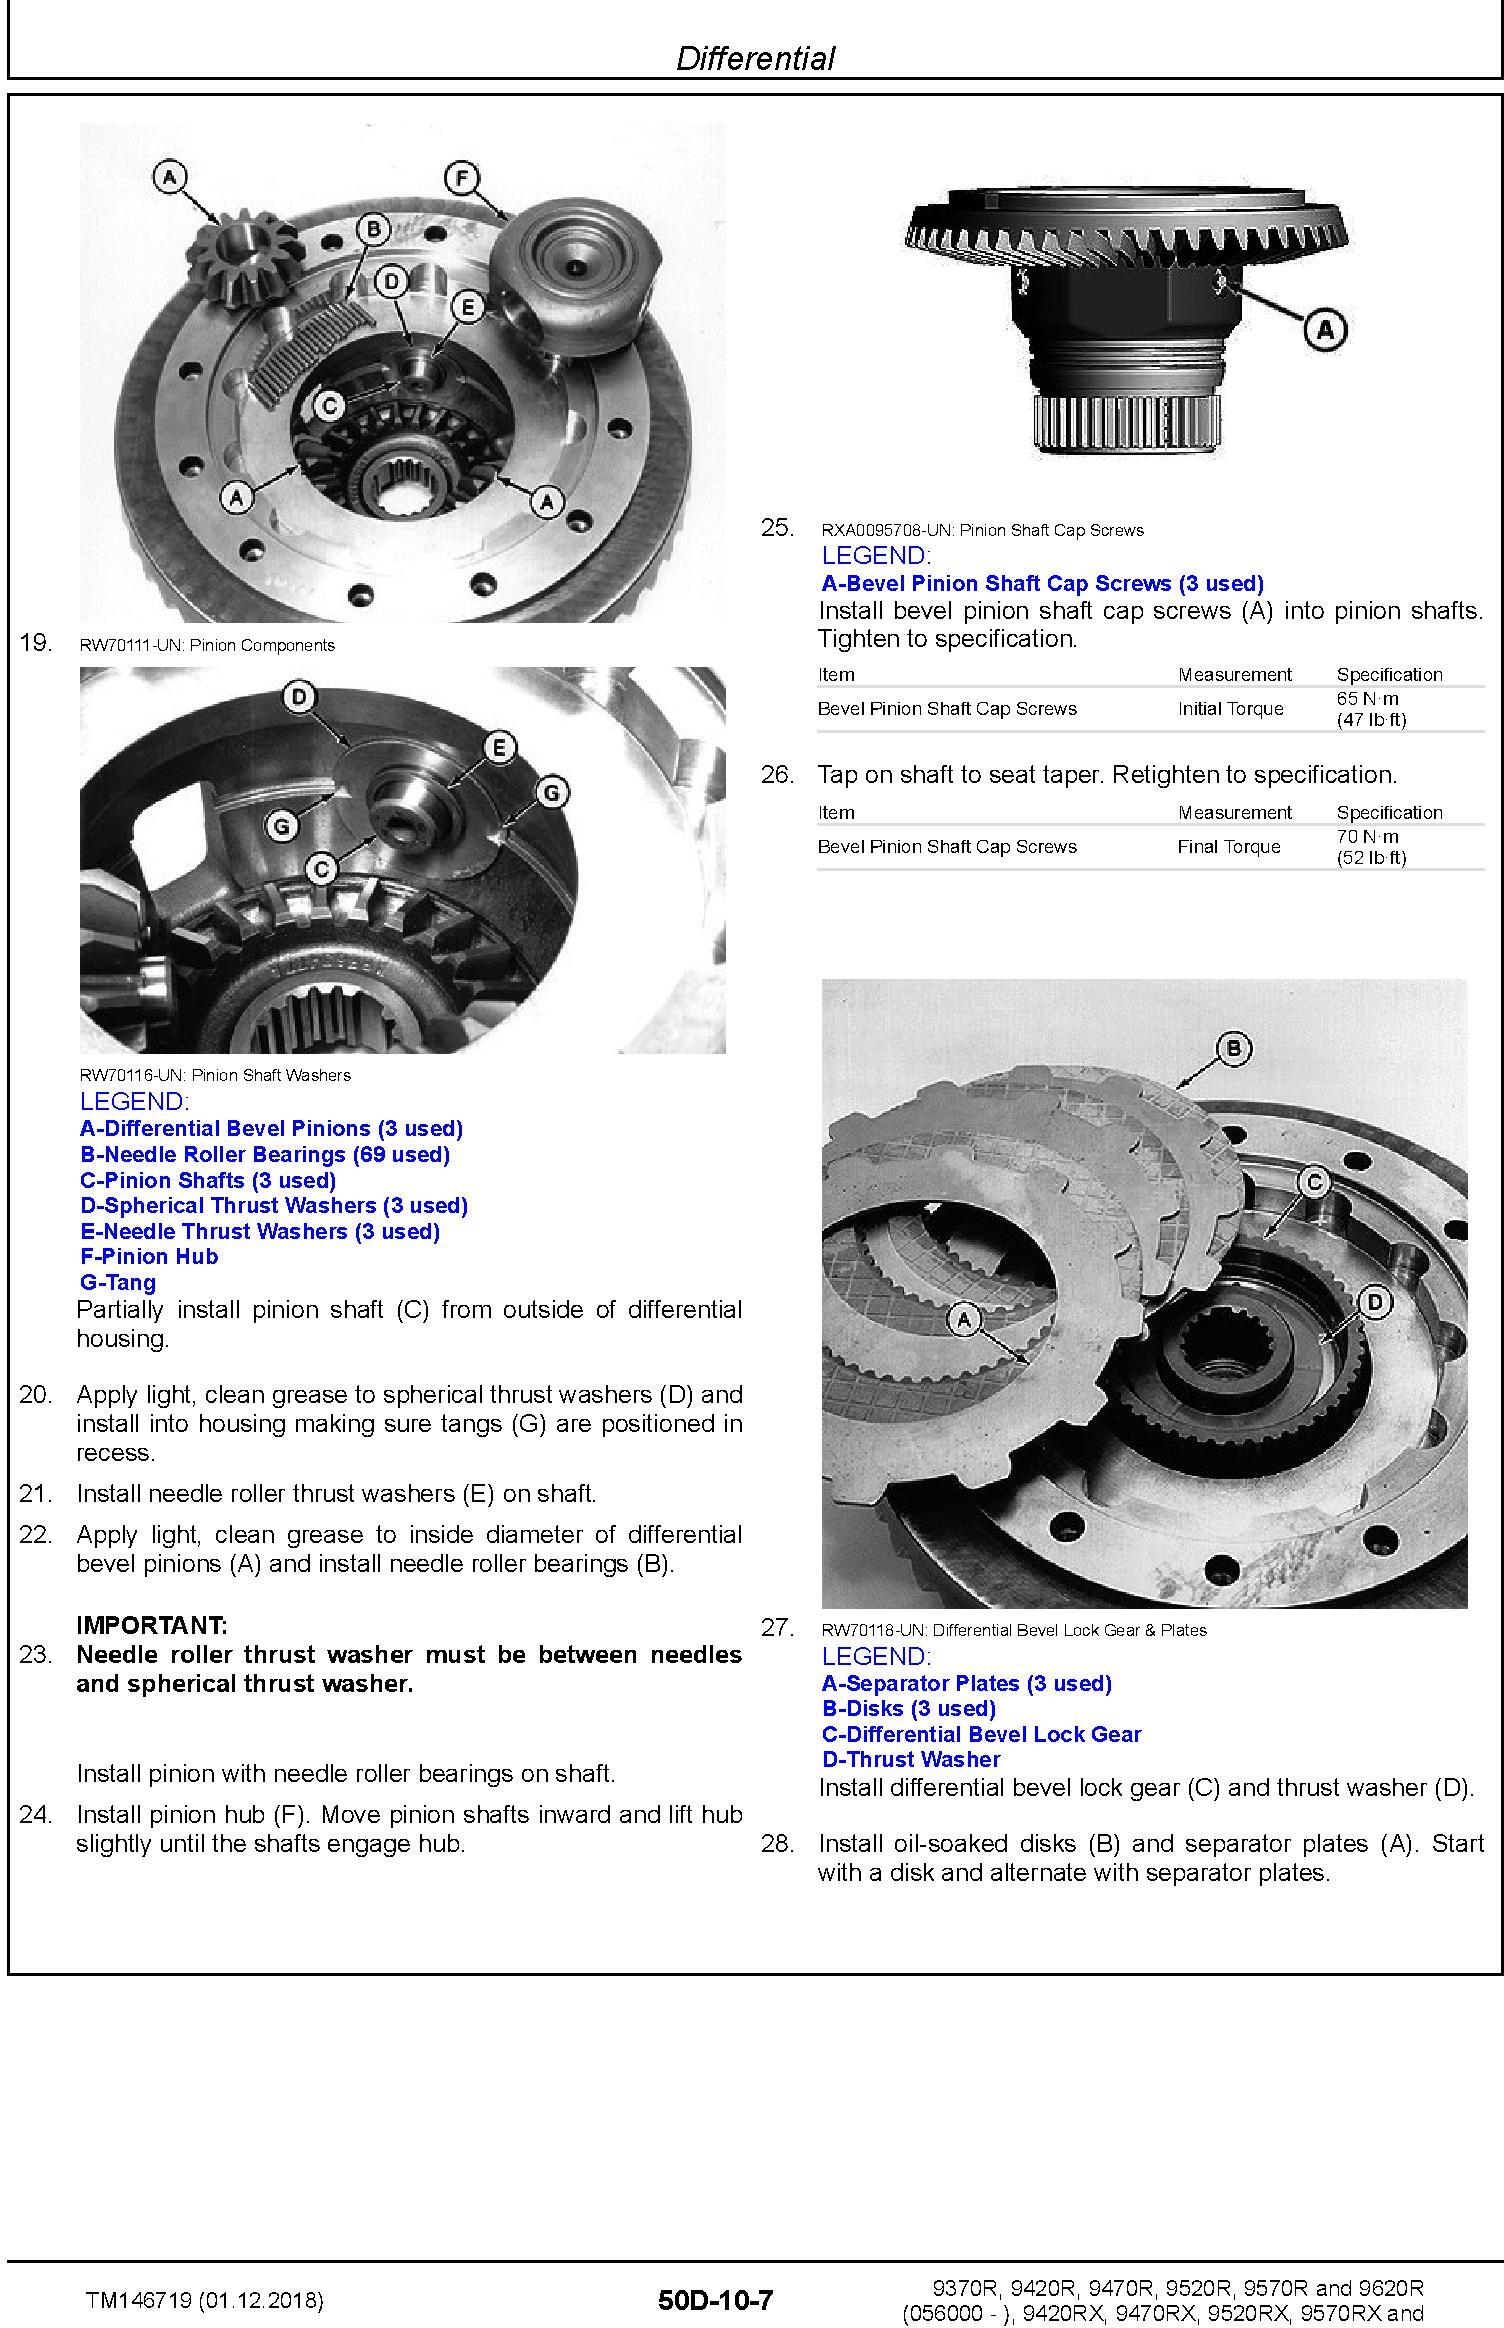 John Deere 9370R 9420R/RX 9470R/RX 9520R/RX 9570R/RX 9620R/RX Tractors Repair Manual (TM146719) - 2